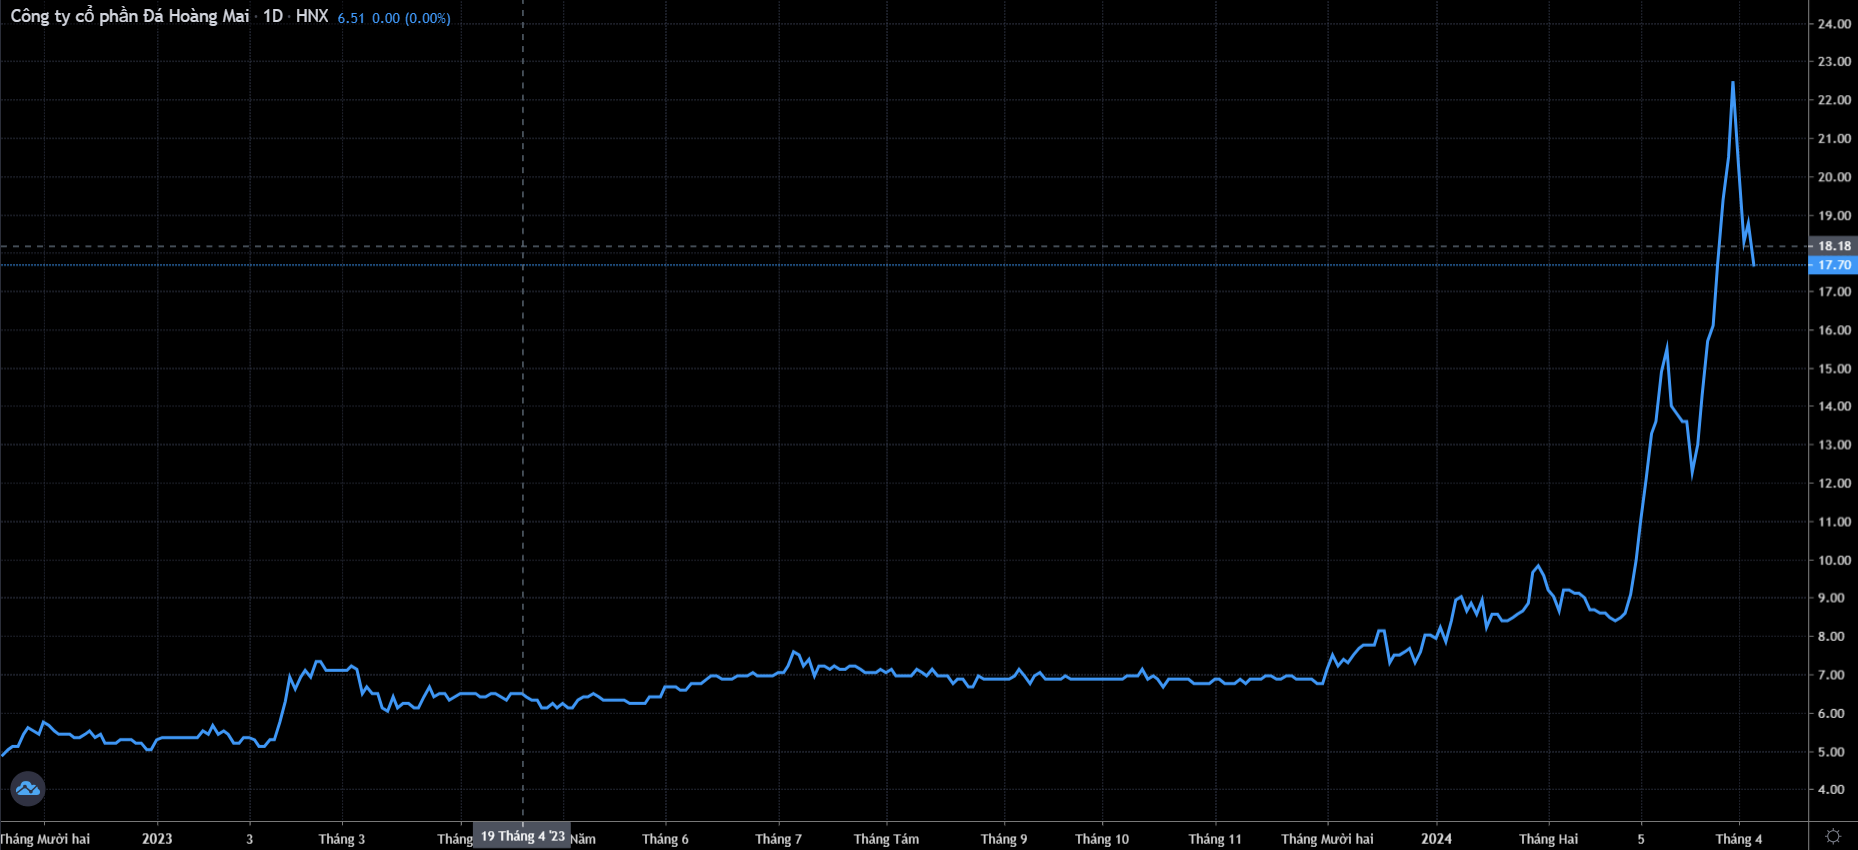 Cổ phiếu HMR vọt tăng từ vùng giá 6.500 đồng/cp lên mức 22.000 đồng/cp trong vòng 1 tháng (Nguồn: TradingView)